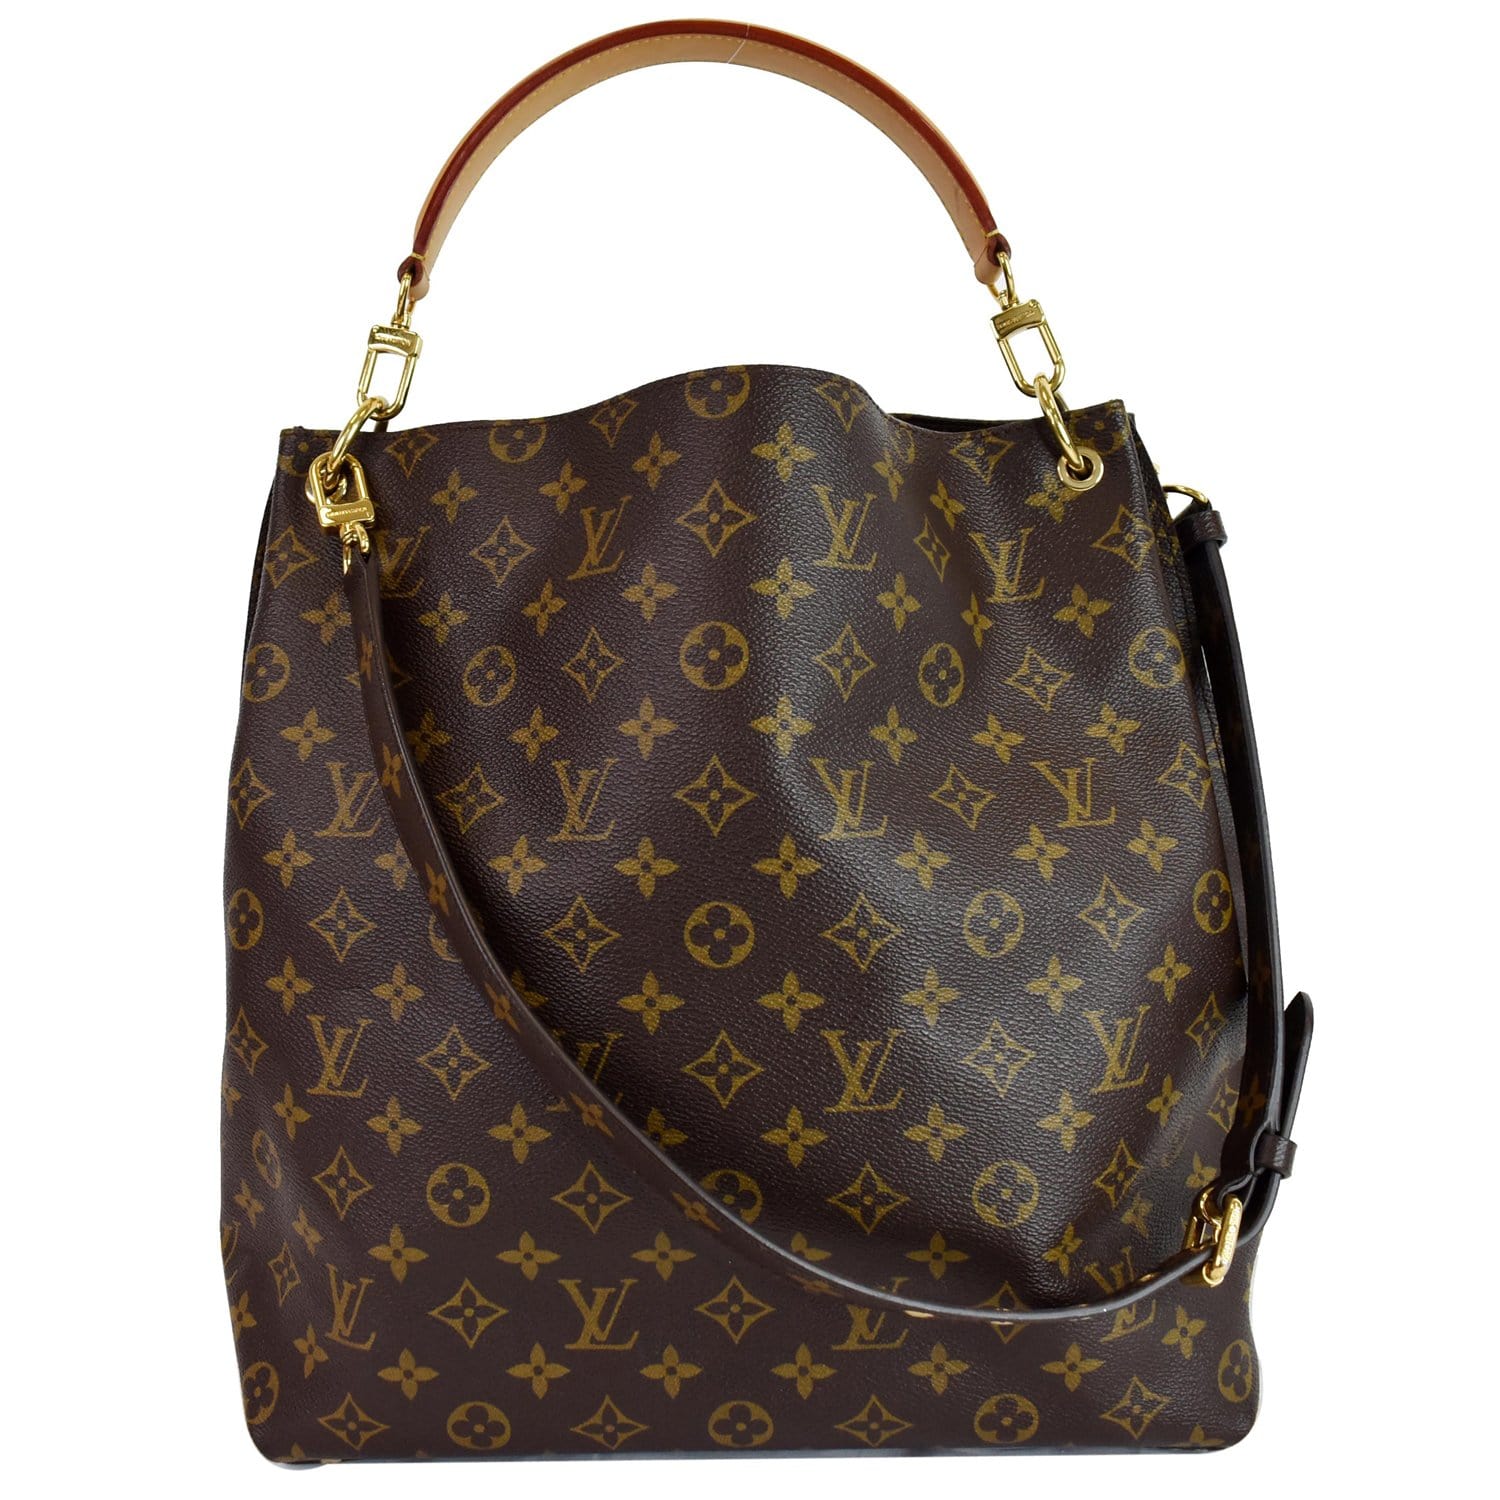 M40781 Louis Vuitton 2013 Monogram Metis Handbag